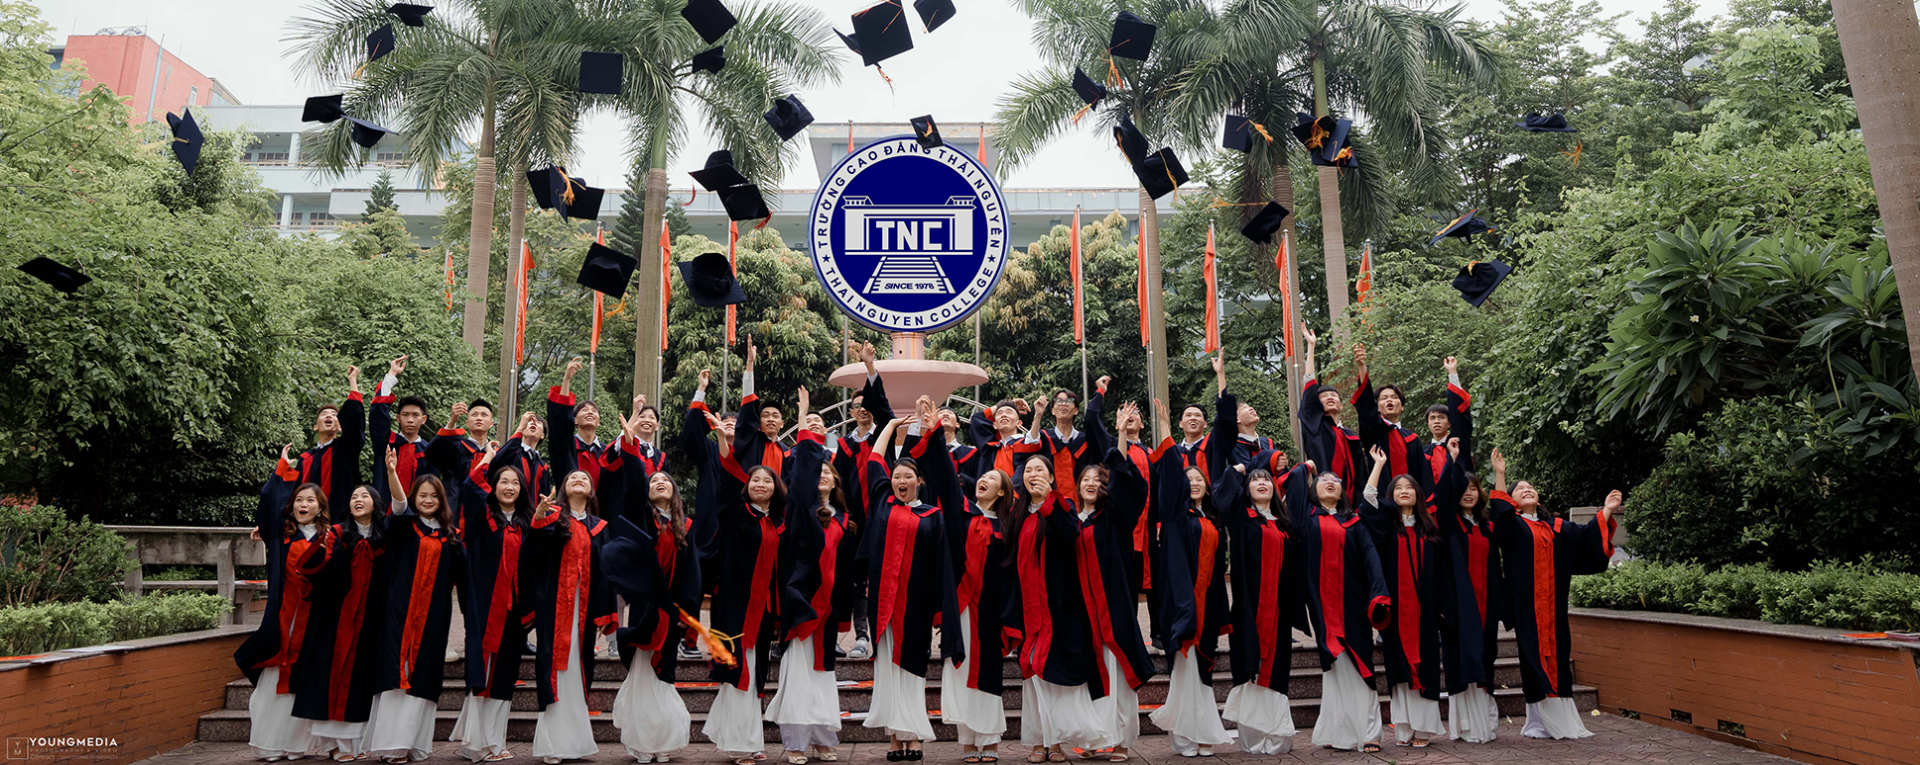 Trường Cao đẳng Thái nguyên thông báo Tuyển sinh Cao đẳng, Trung cấp nghề năm 2022